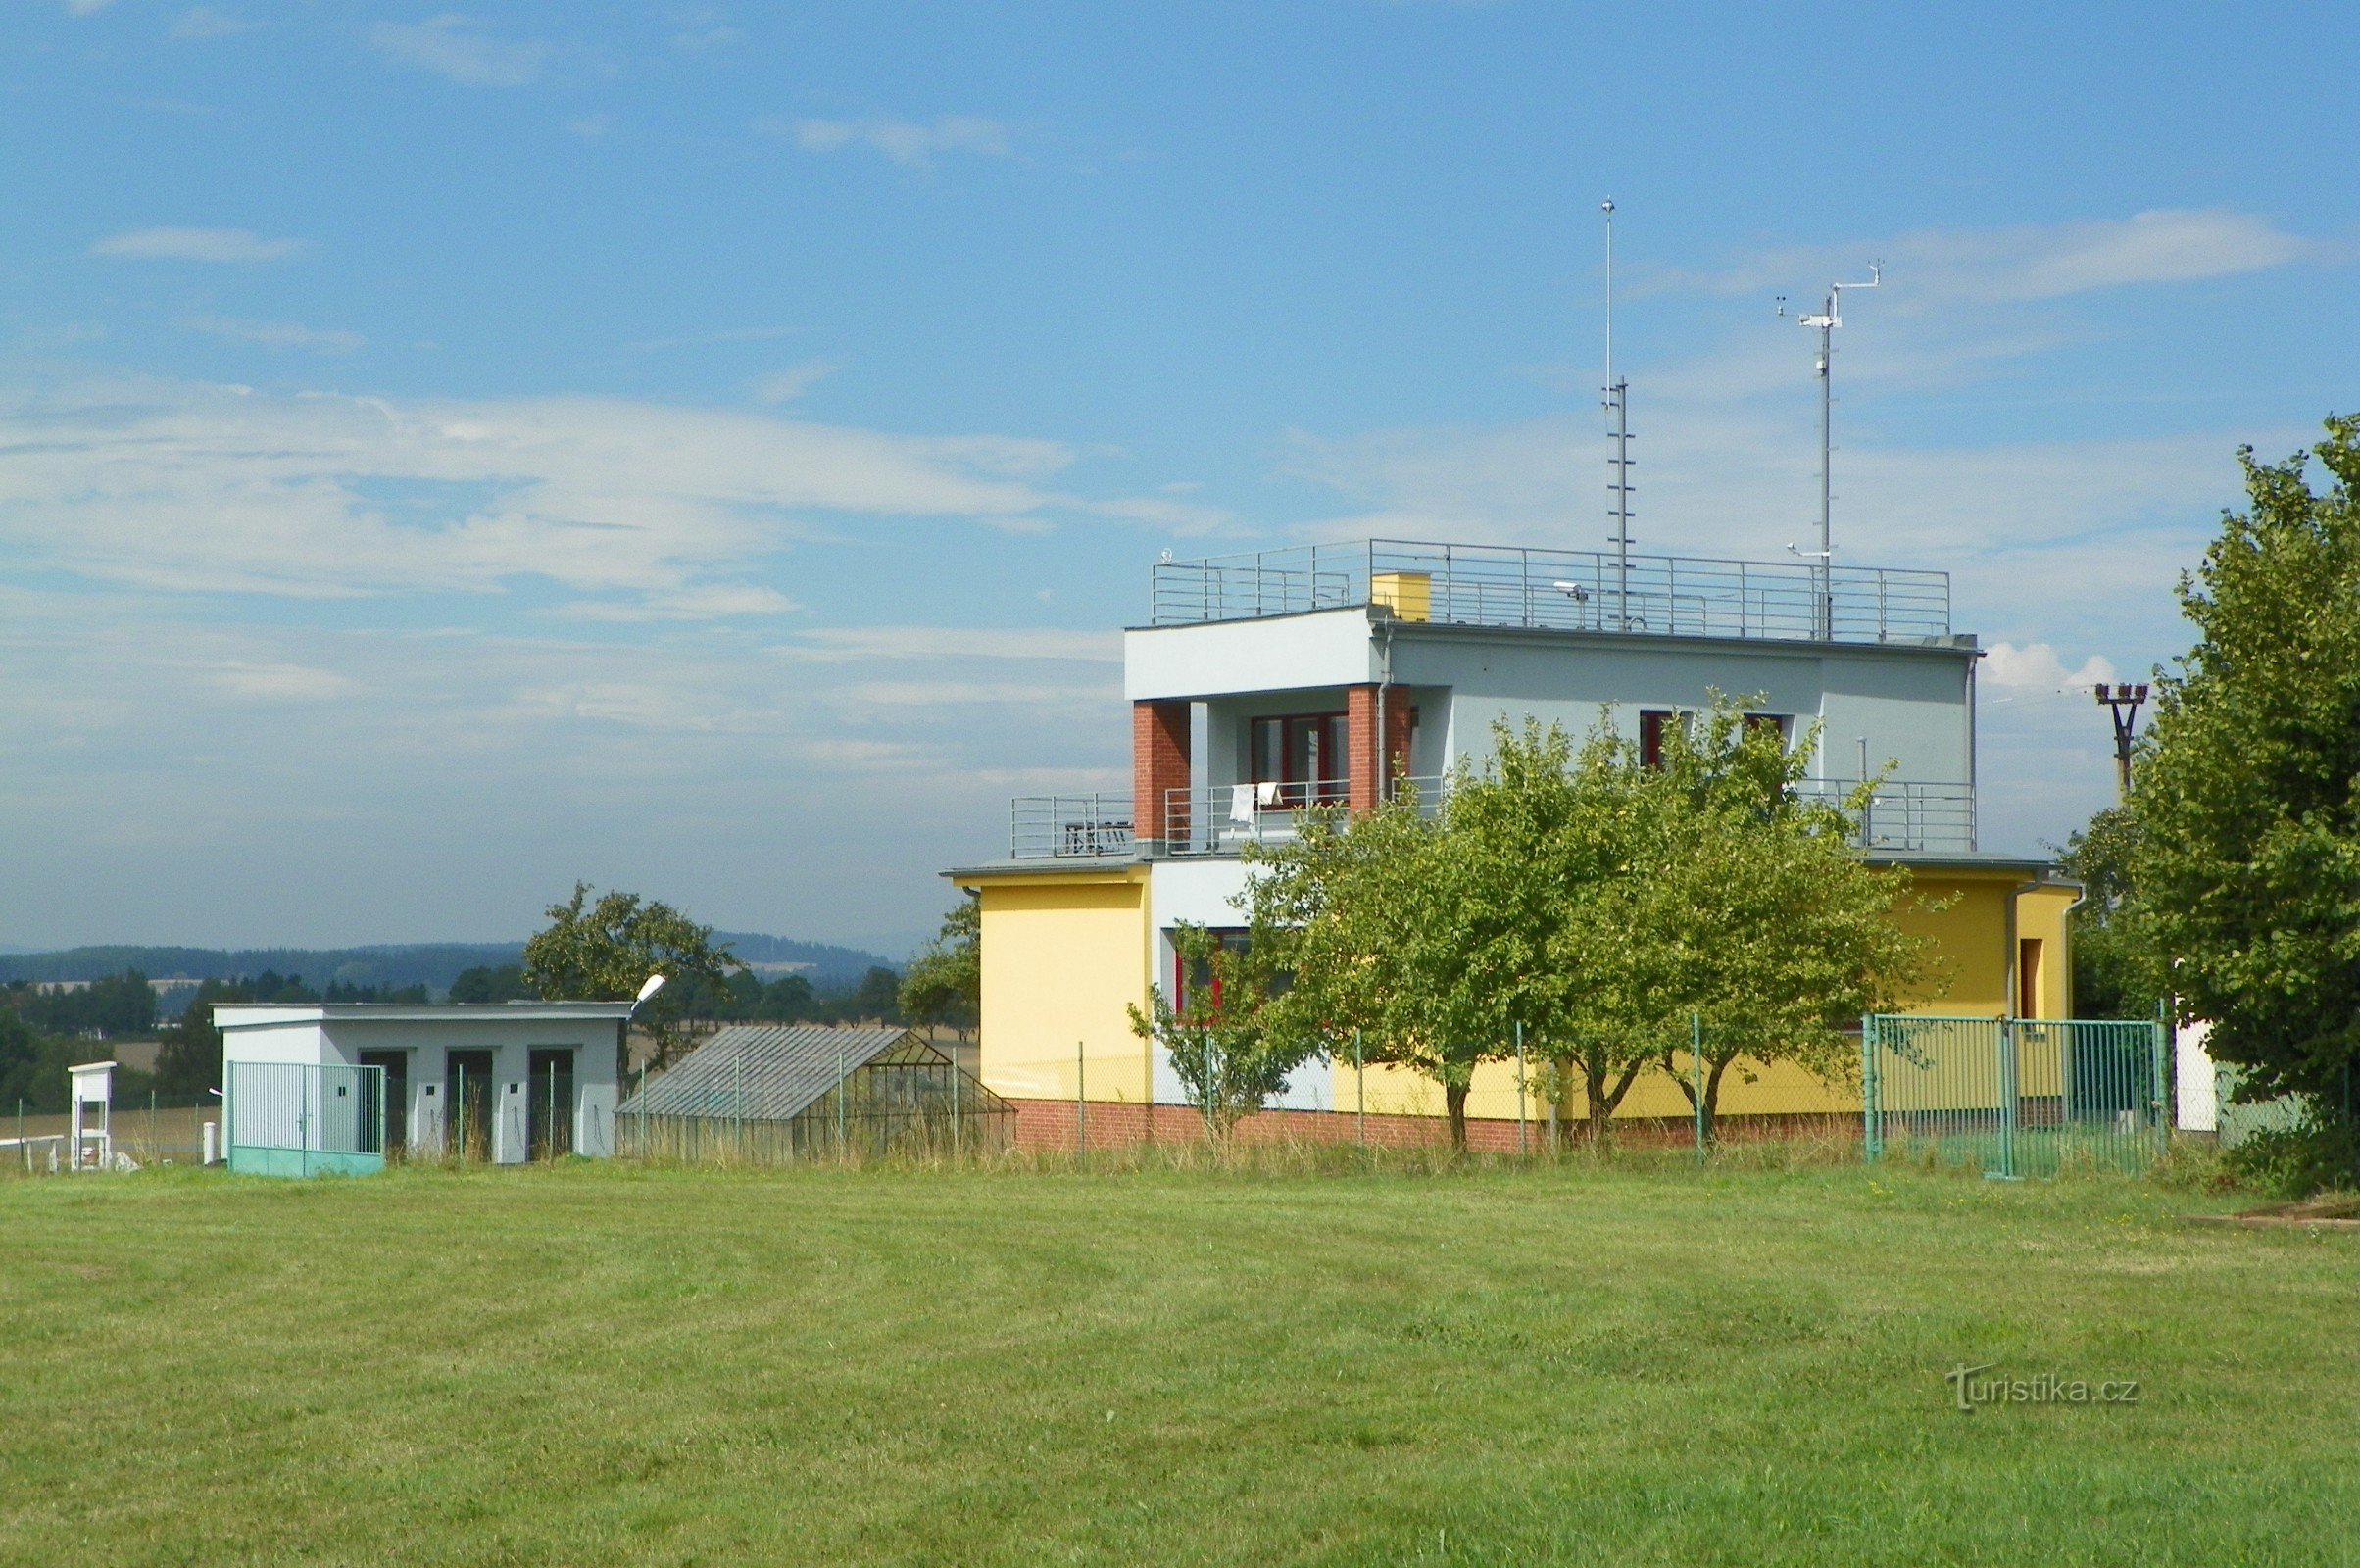 Tornet på Přibyslav flygplats med en webbkamera